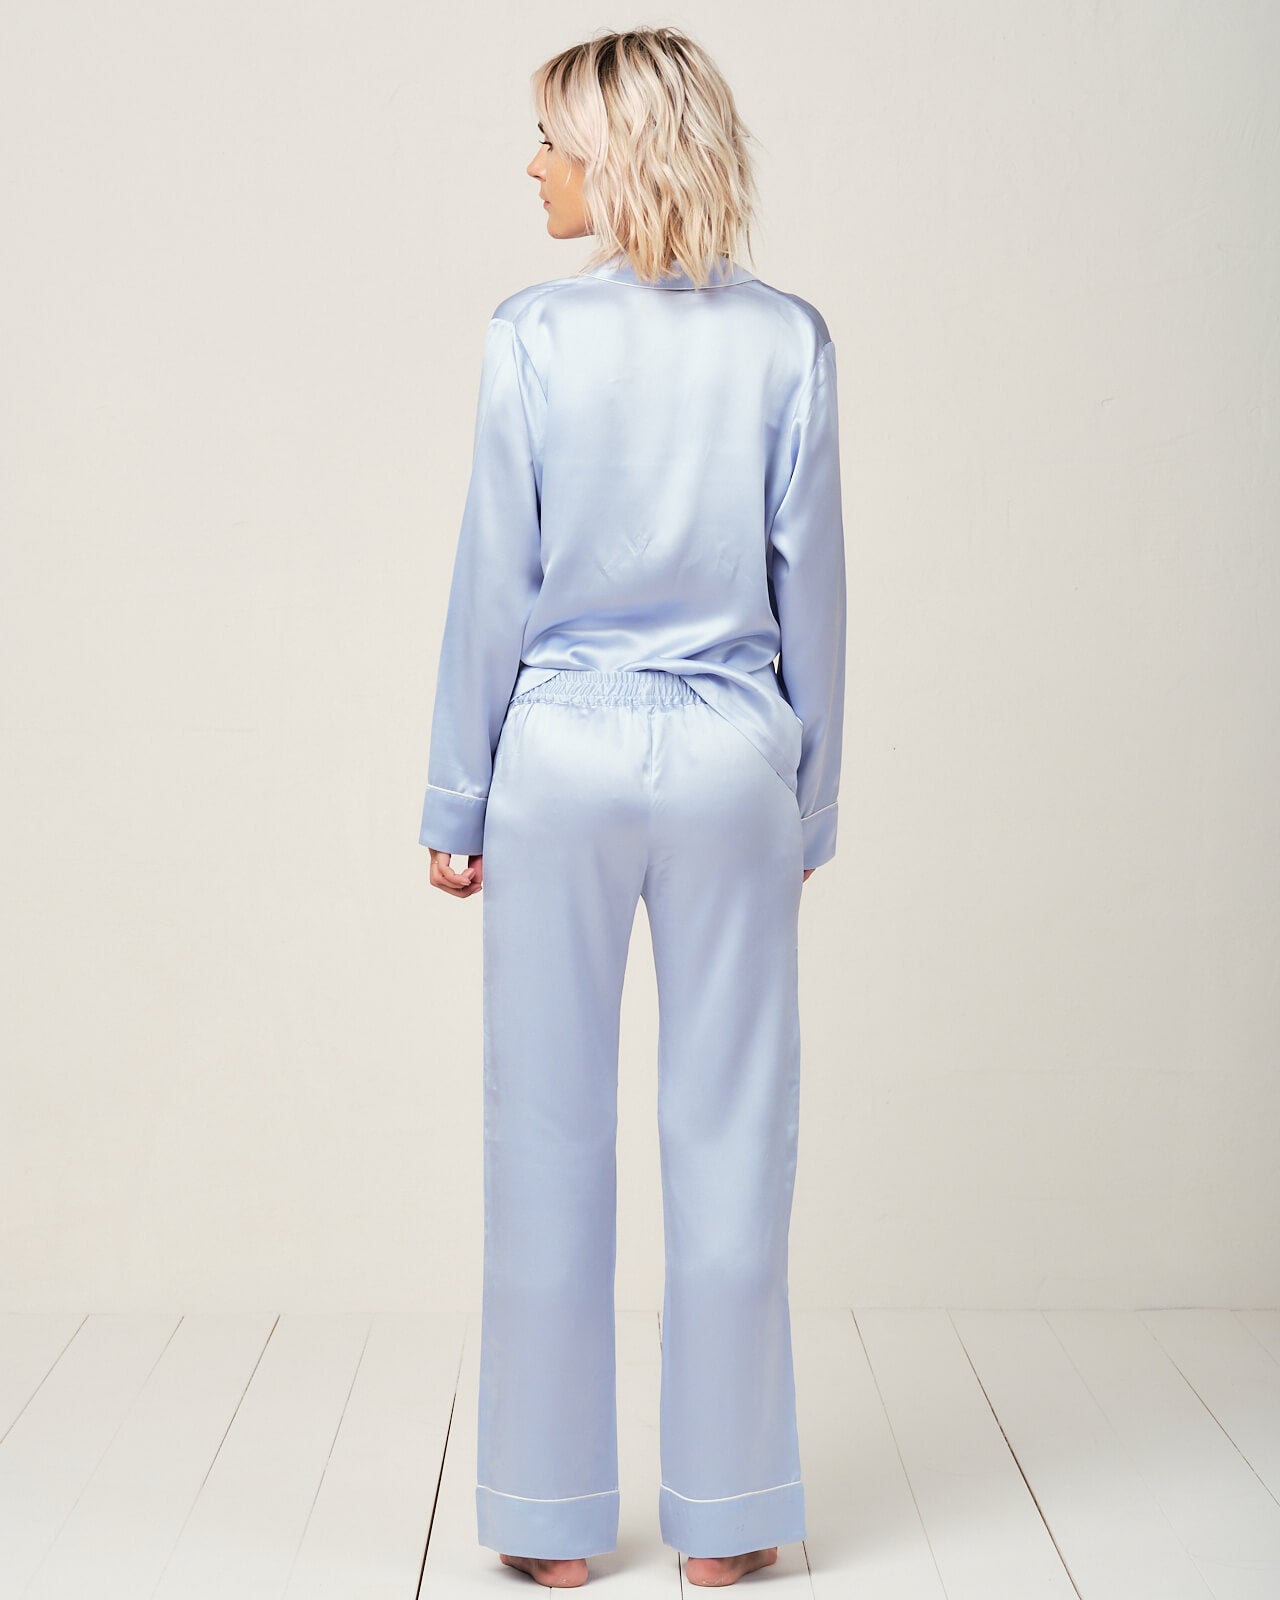 Elisabetha Silk Pyjama in Candy Blue - Bottom